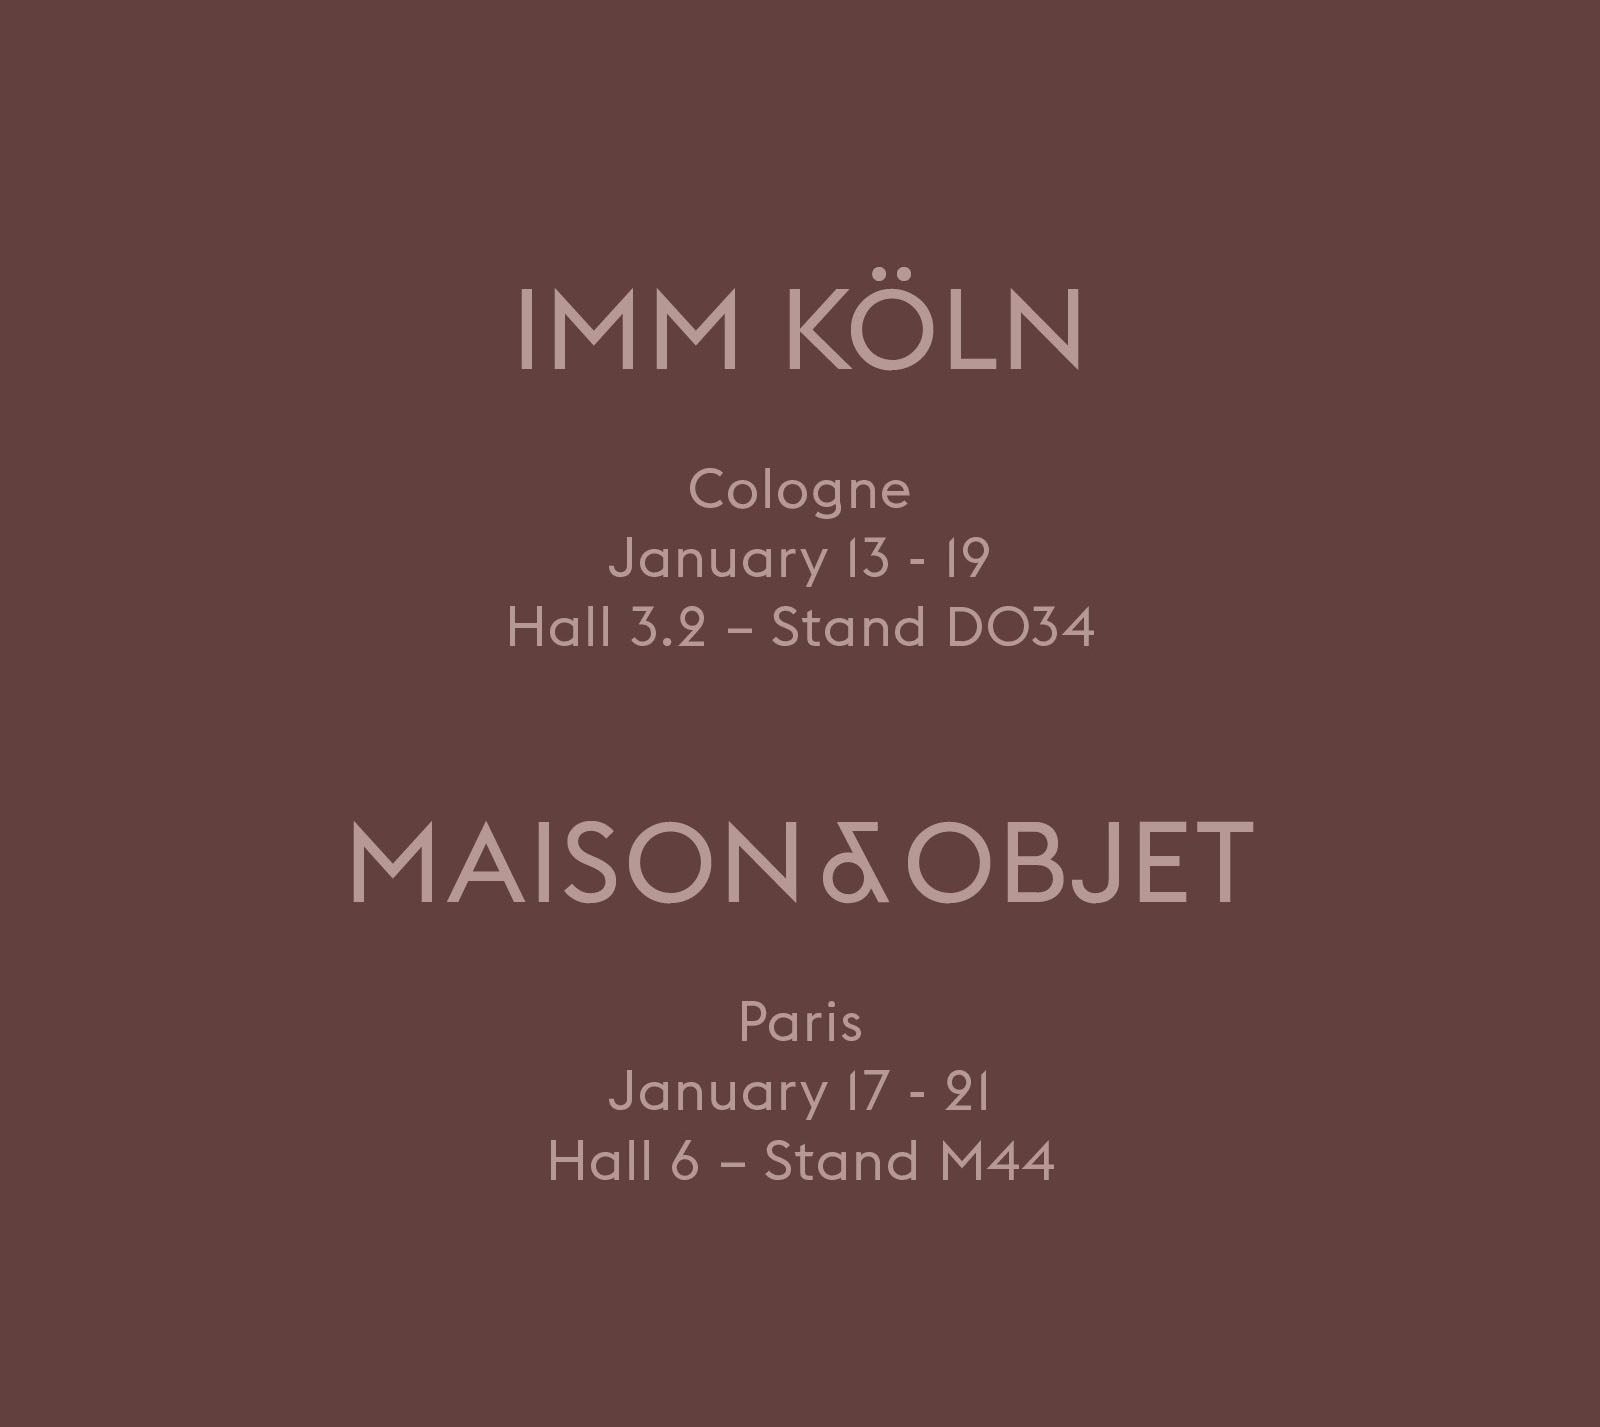 Salons du mobilier Maison&Objet et IMM Cologne